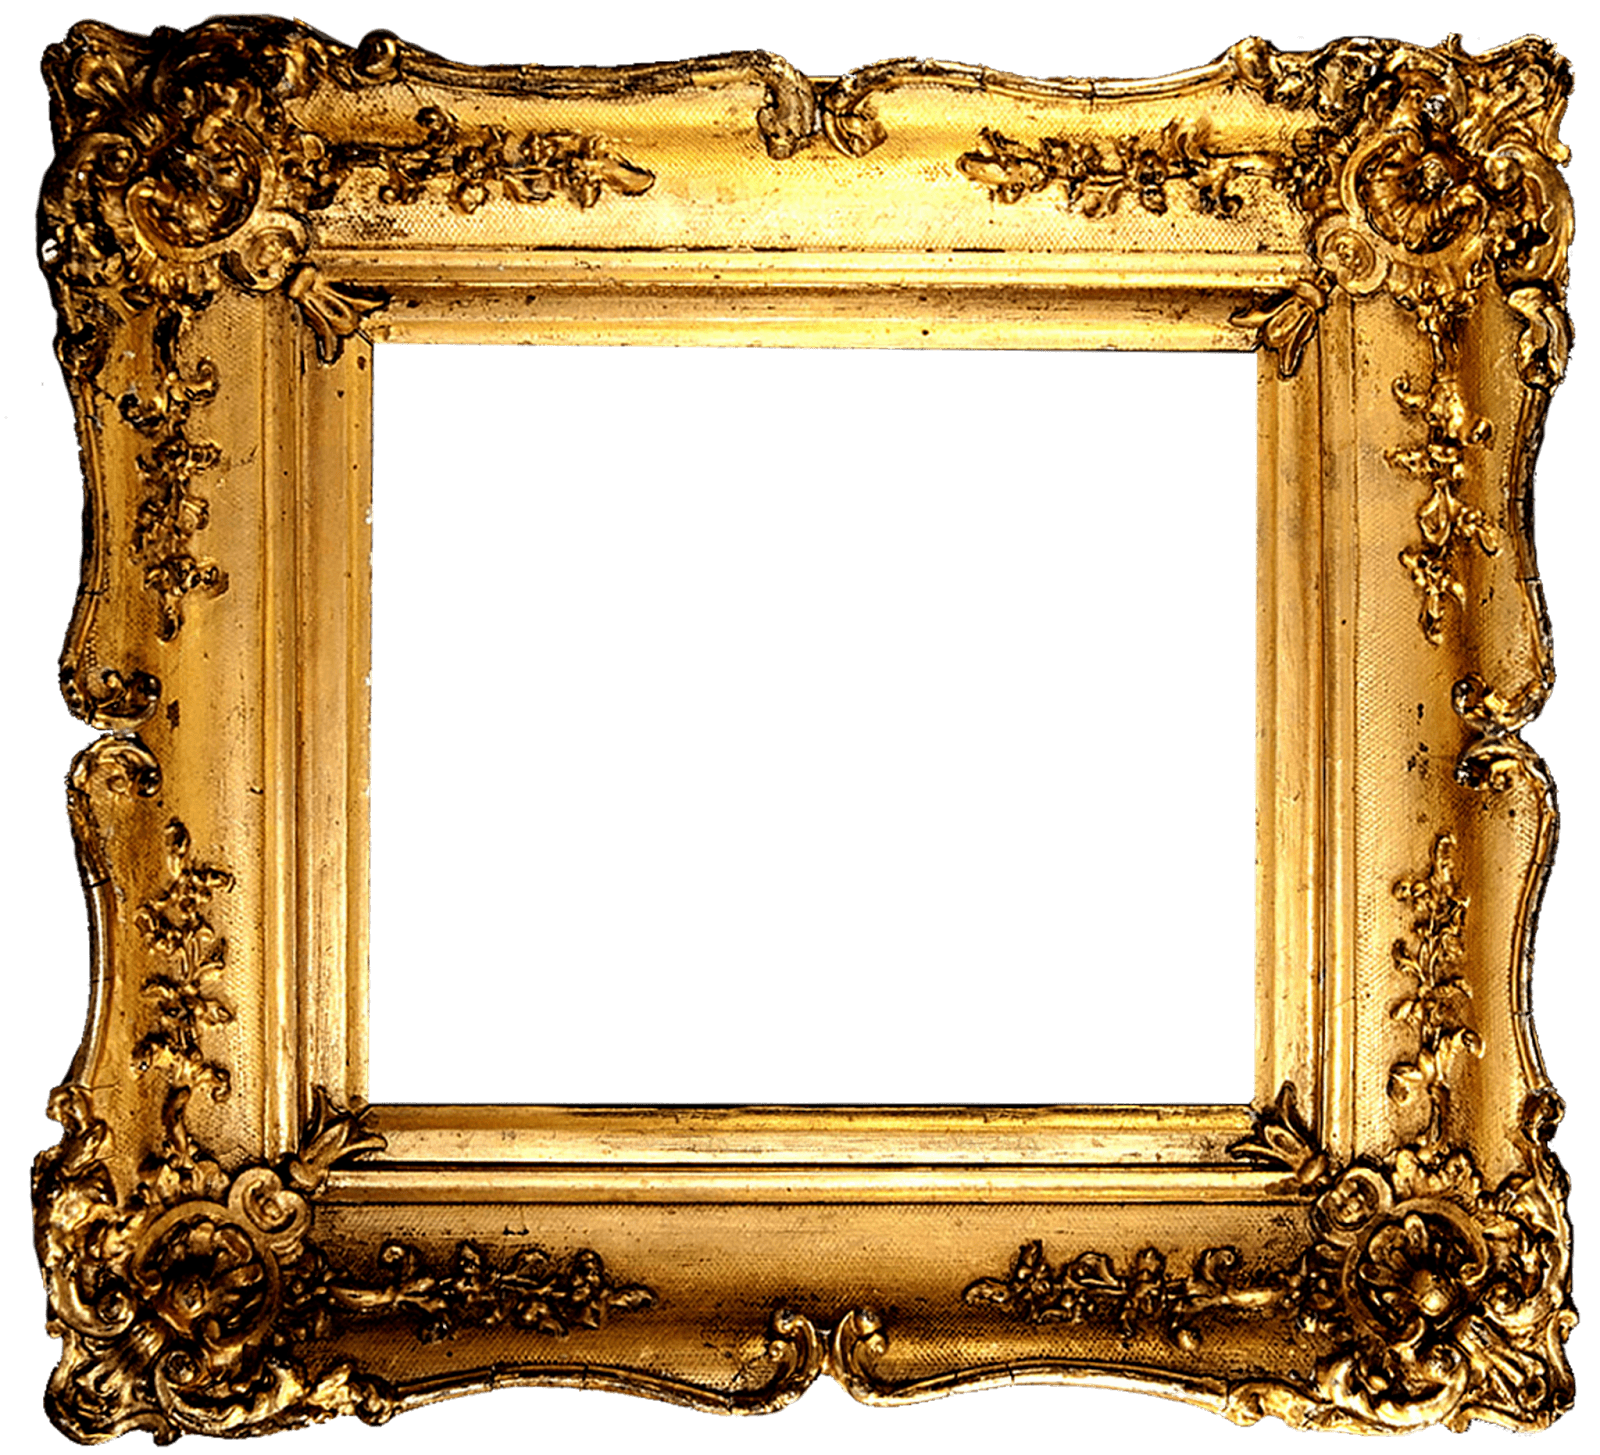 Vintage Gold Frame - Frames For Pictures, Transparent background PNG HD thumbnail